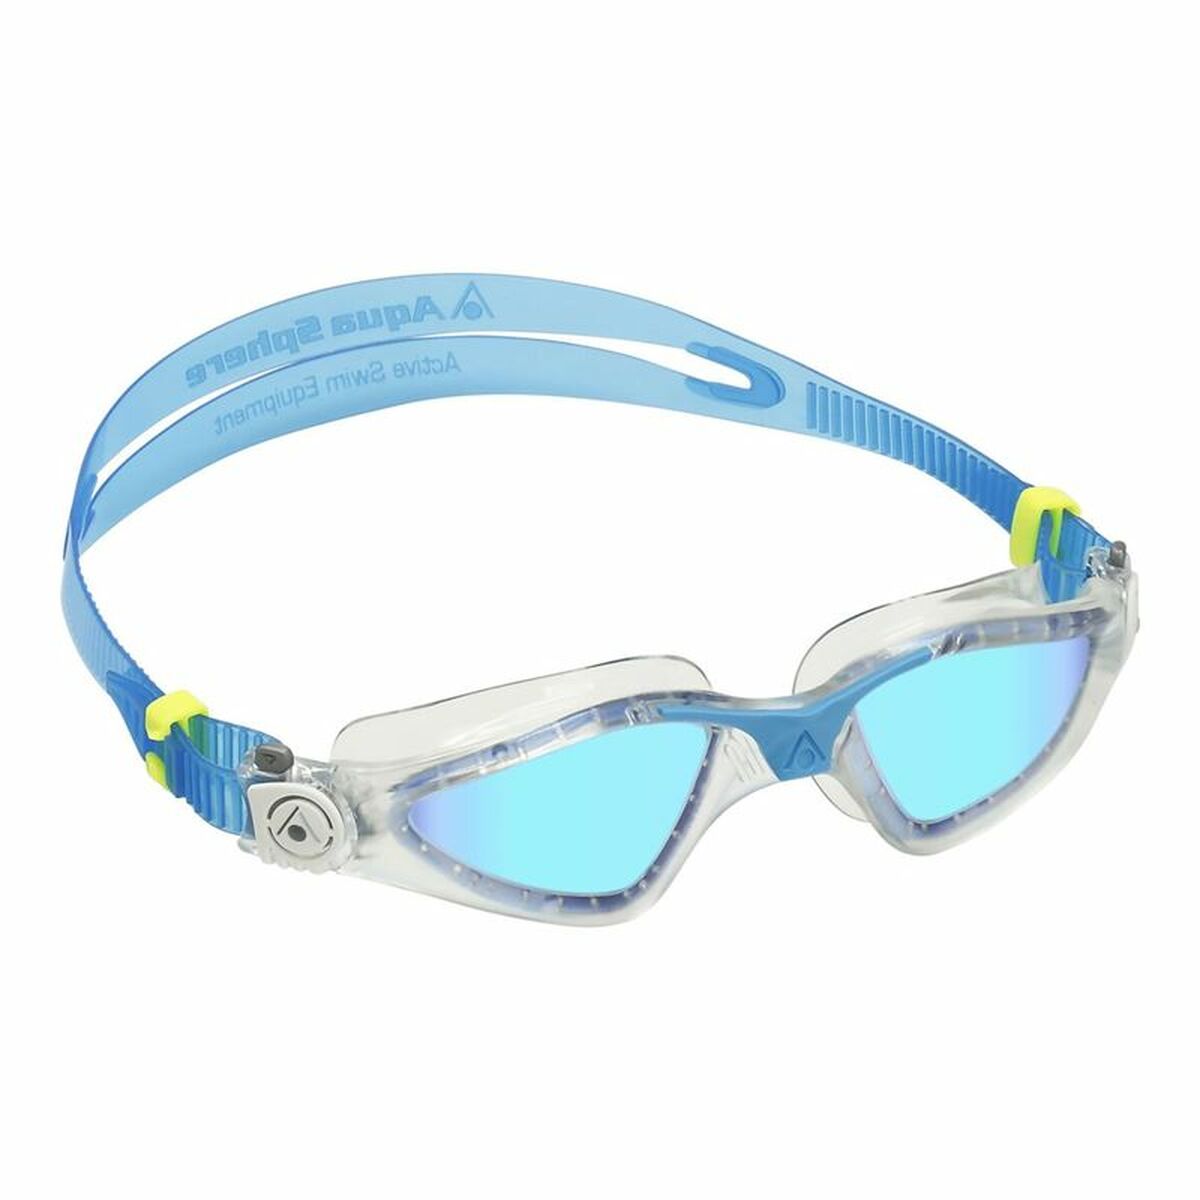 Swimming Goggles Aqua Sphere Kayenne Blue Adults